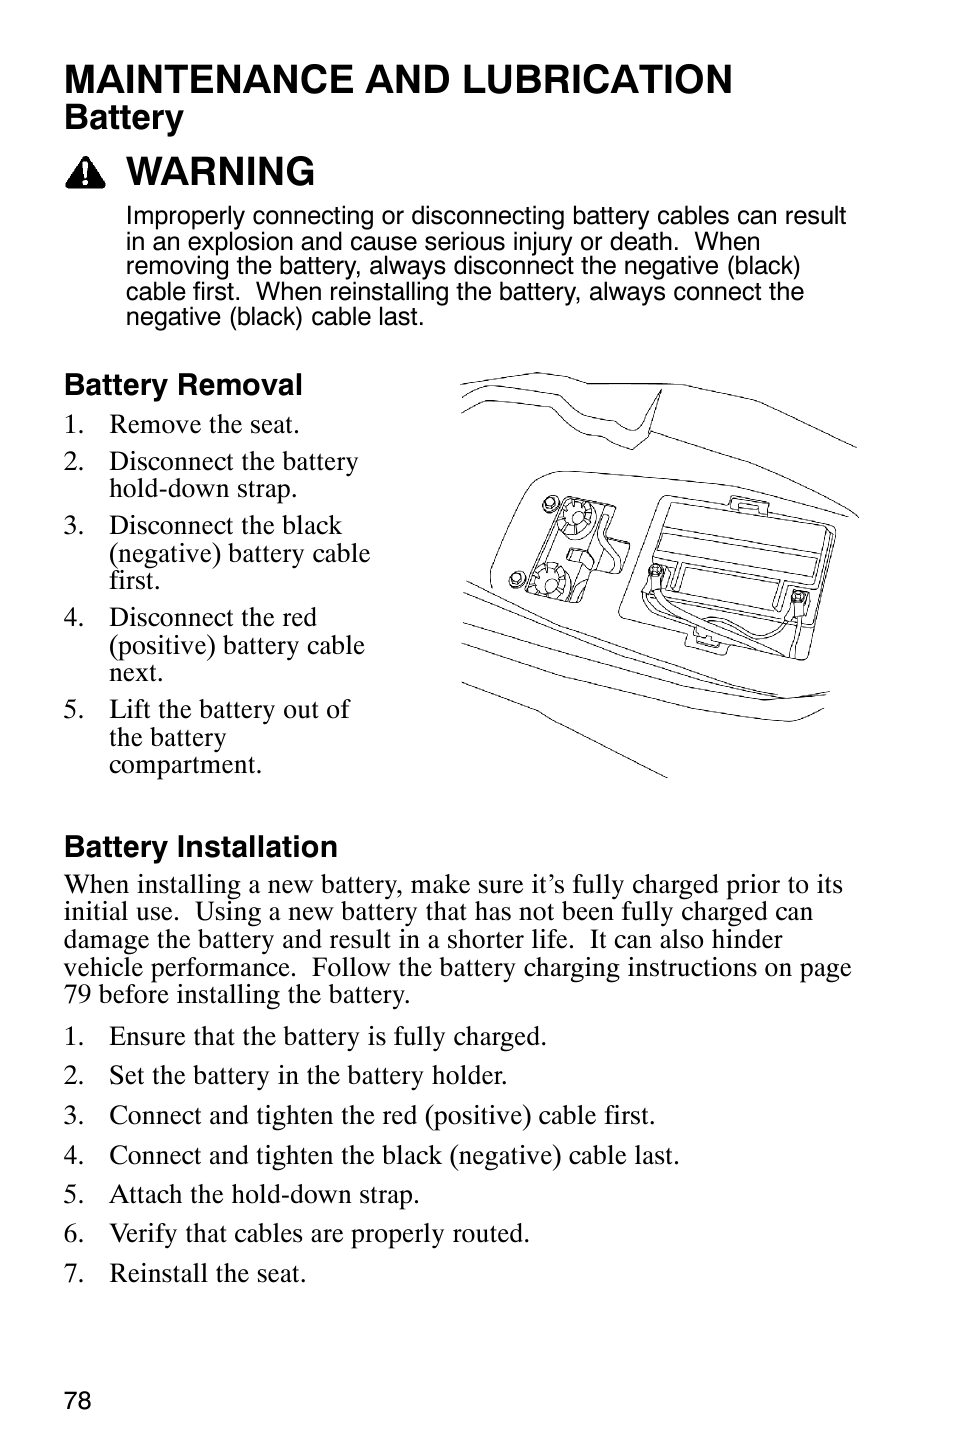 Maintenance and lubrication, Warning, Battery | Polaris PHOENIX 200